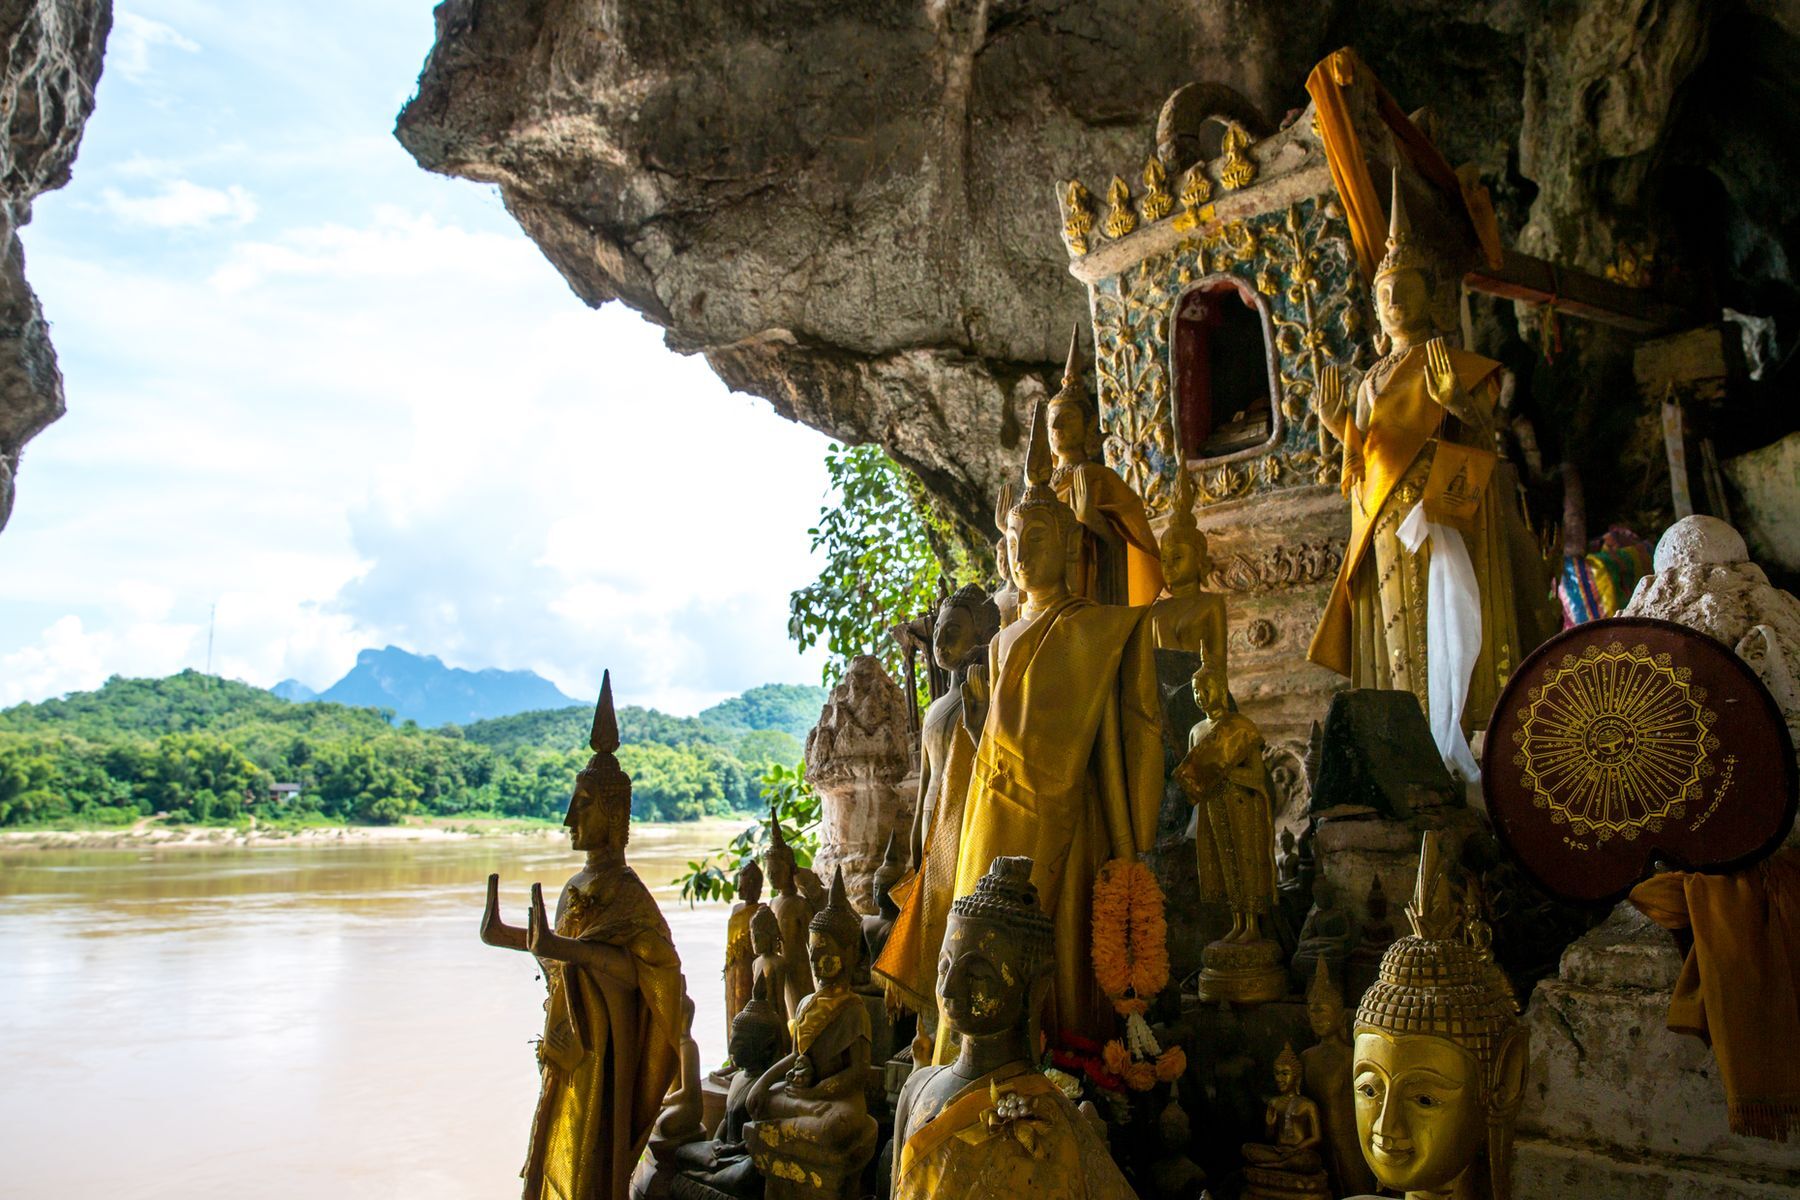 <p>Cette ville située au nord du Laos est un <a href="https://vietnamdecouverte.com/luang-prabang">havre de paix et de spiritualité</a>. Plusieurs <a href="https://authentikvietnam.com/10-activites-ecotouristiques-a-luang-prabang">activités écotouristiques</a> respectueuses de cette harmonie avec la nature s’offrent à vous à Luang Prabang, dont se promener à pied, ce qui, en plus d’être gratuit, permet de découvrir à votre rythme la fusion entre l’architecture urbaine traditionnelle du Laos et celle de l’époque coloniale de la cité. Celle-ci fait d’ailleurs partie du <a href="https://whc.unesco.org/fr/list/479/">patrimoine de l’UNESCO</a> grâce à ce paysage unique. À 25 kilomètres de la ville, vous trouverez les <a href="https://www.voyagelaos.com/guide-laos/attraction/grottes-pak-ou">grottes de Pak Ou</a>, un lieu de pèlerinage où vous pourrez voir des milliers de statues de Bouddha pour seulement 20 000 kips (<a href="https://exchangerate.guru/lak/usd/20000/">1 $US</a>).</p>